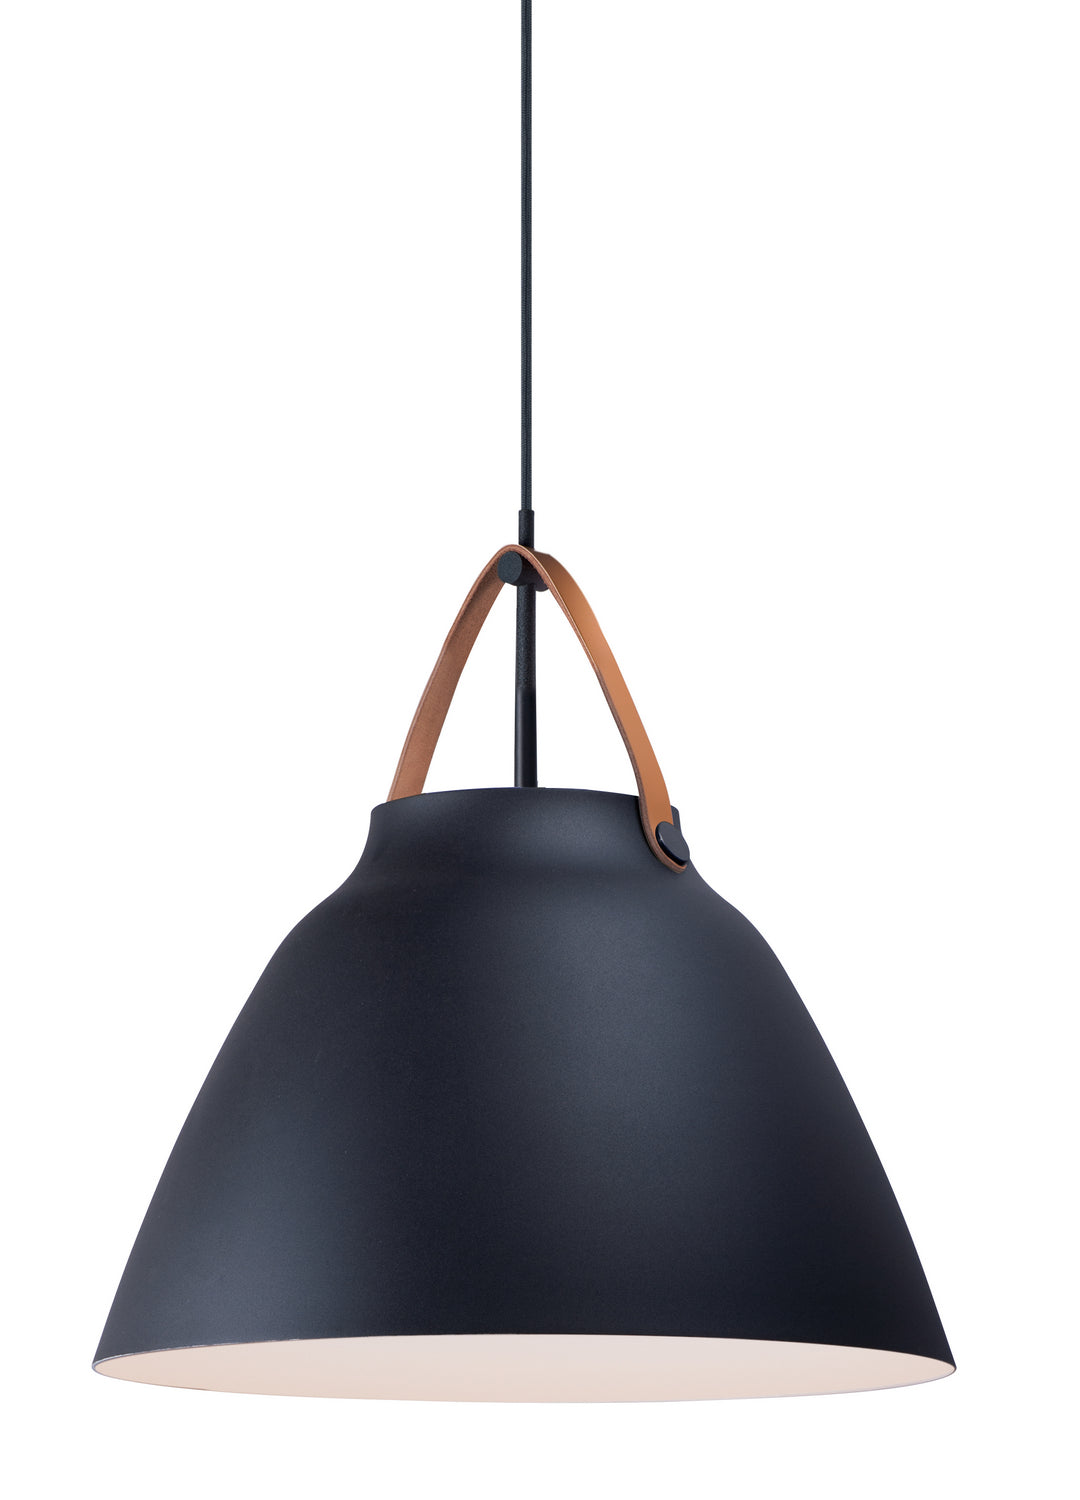 Maxim Nordic 11358TNBK Pendant Light - Tan Leather / Black